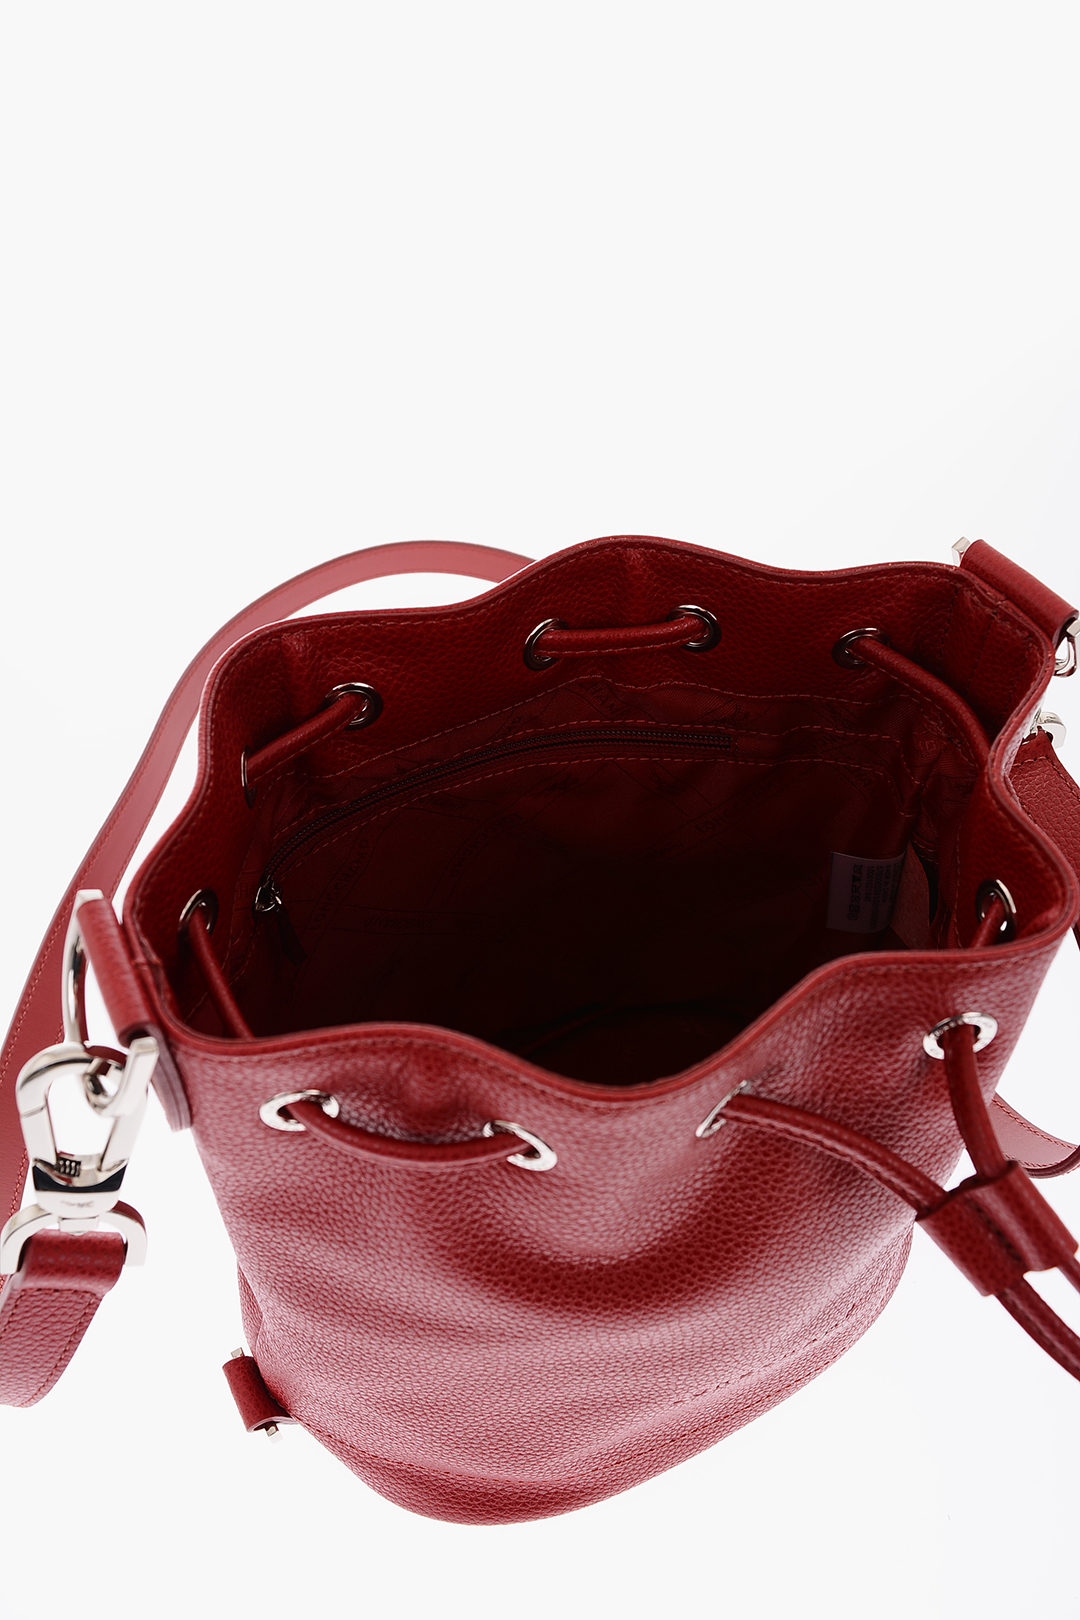 Longchamp Le Foulonné Large Leather Bucket Bag